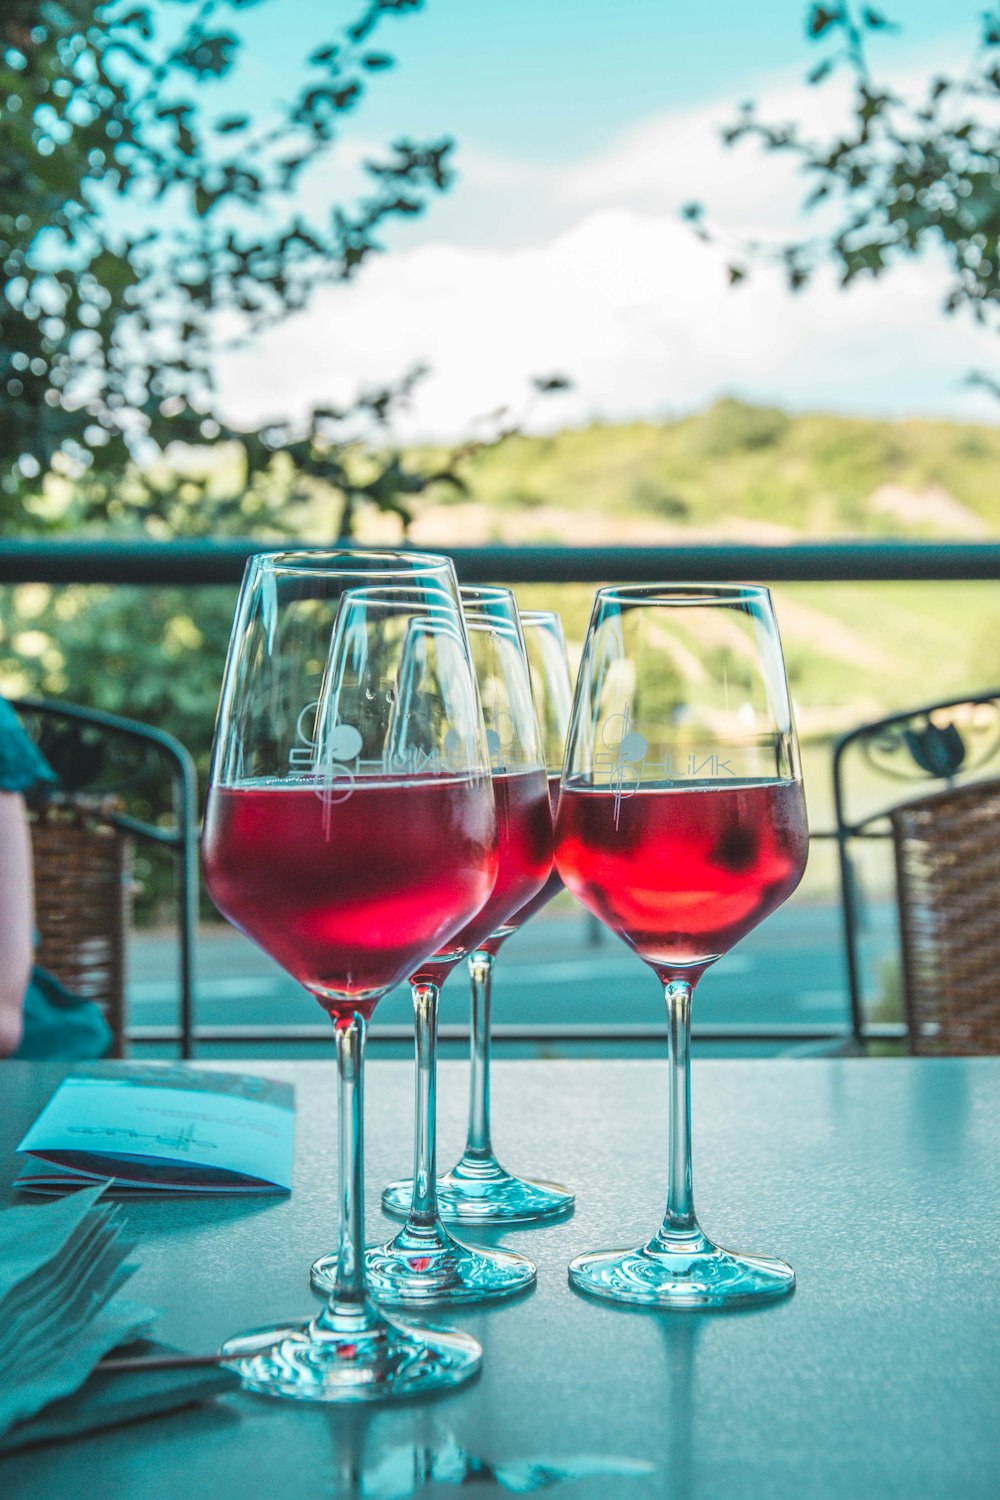 2 wine glasses on table